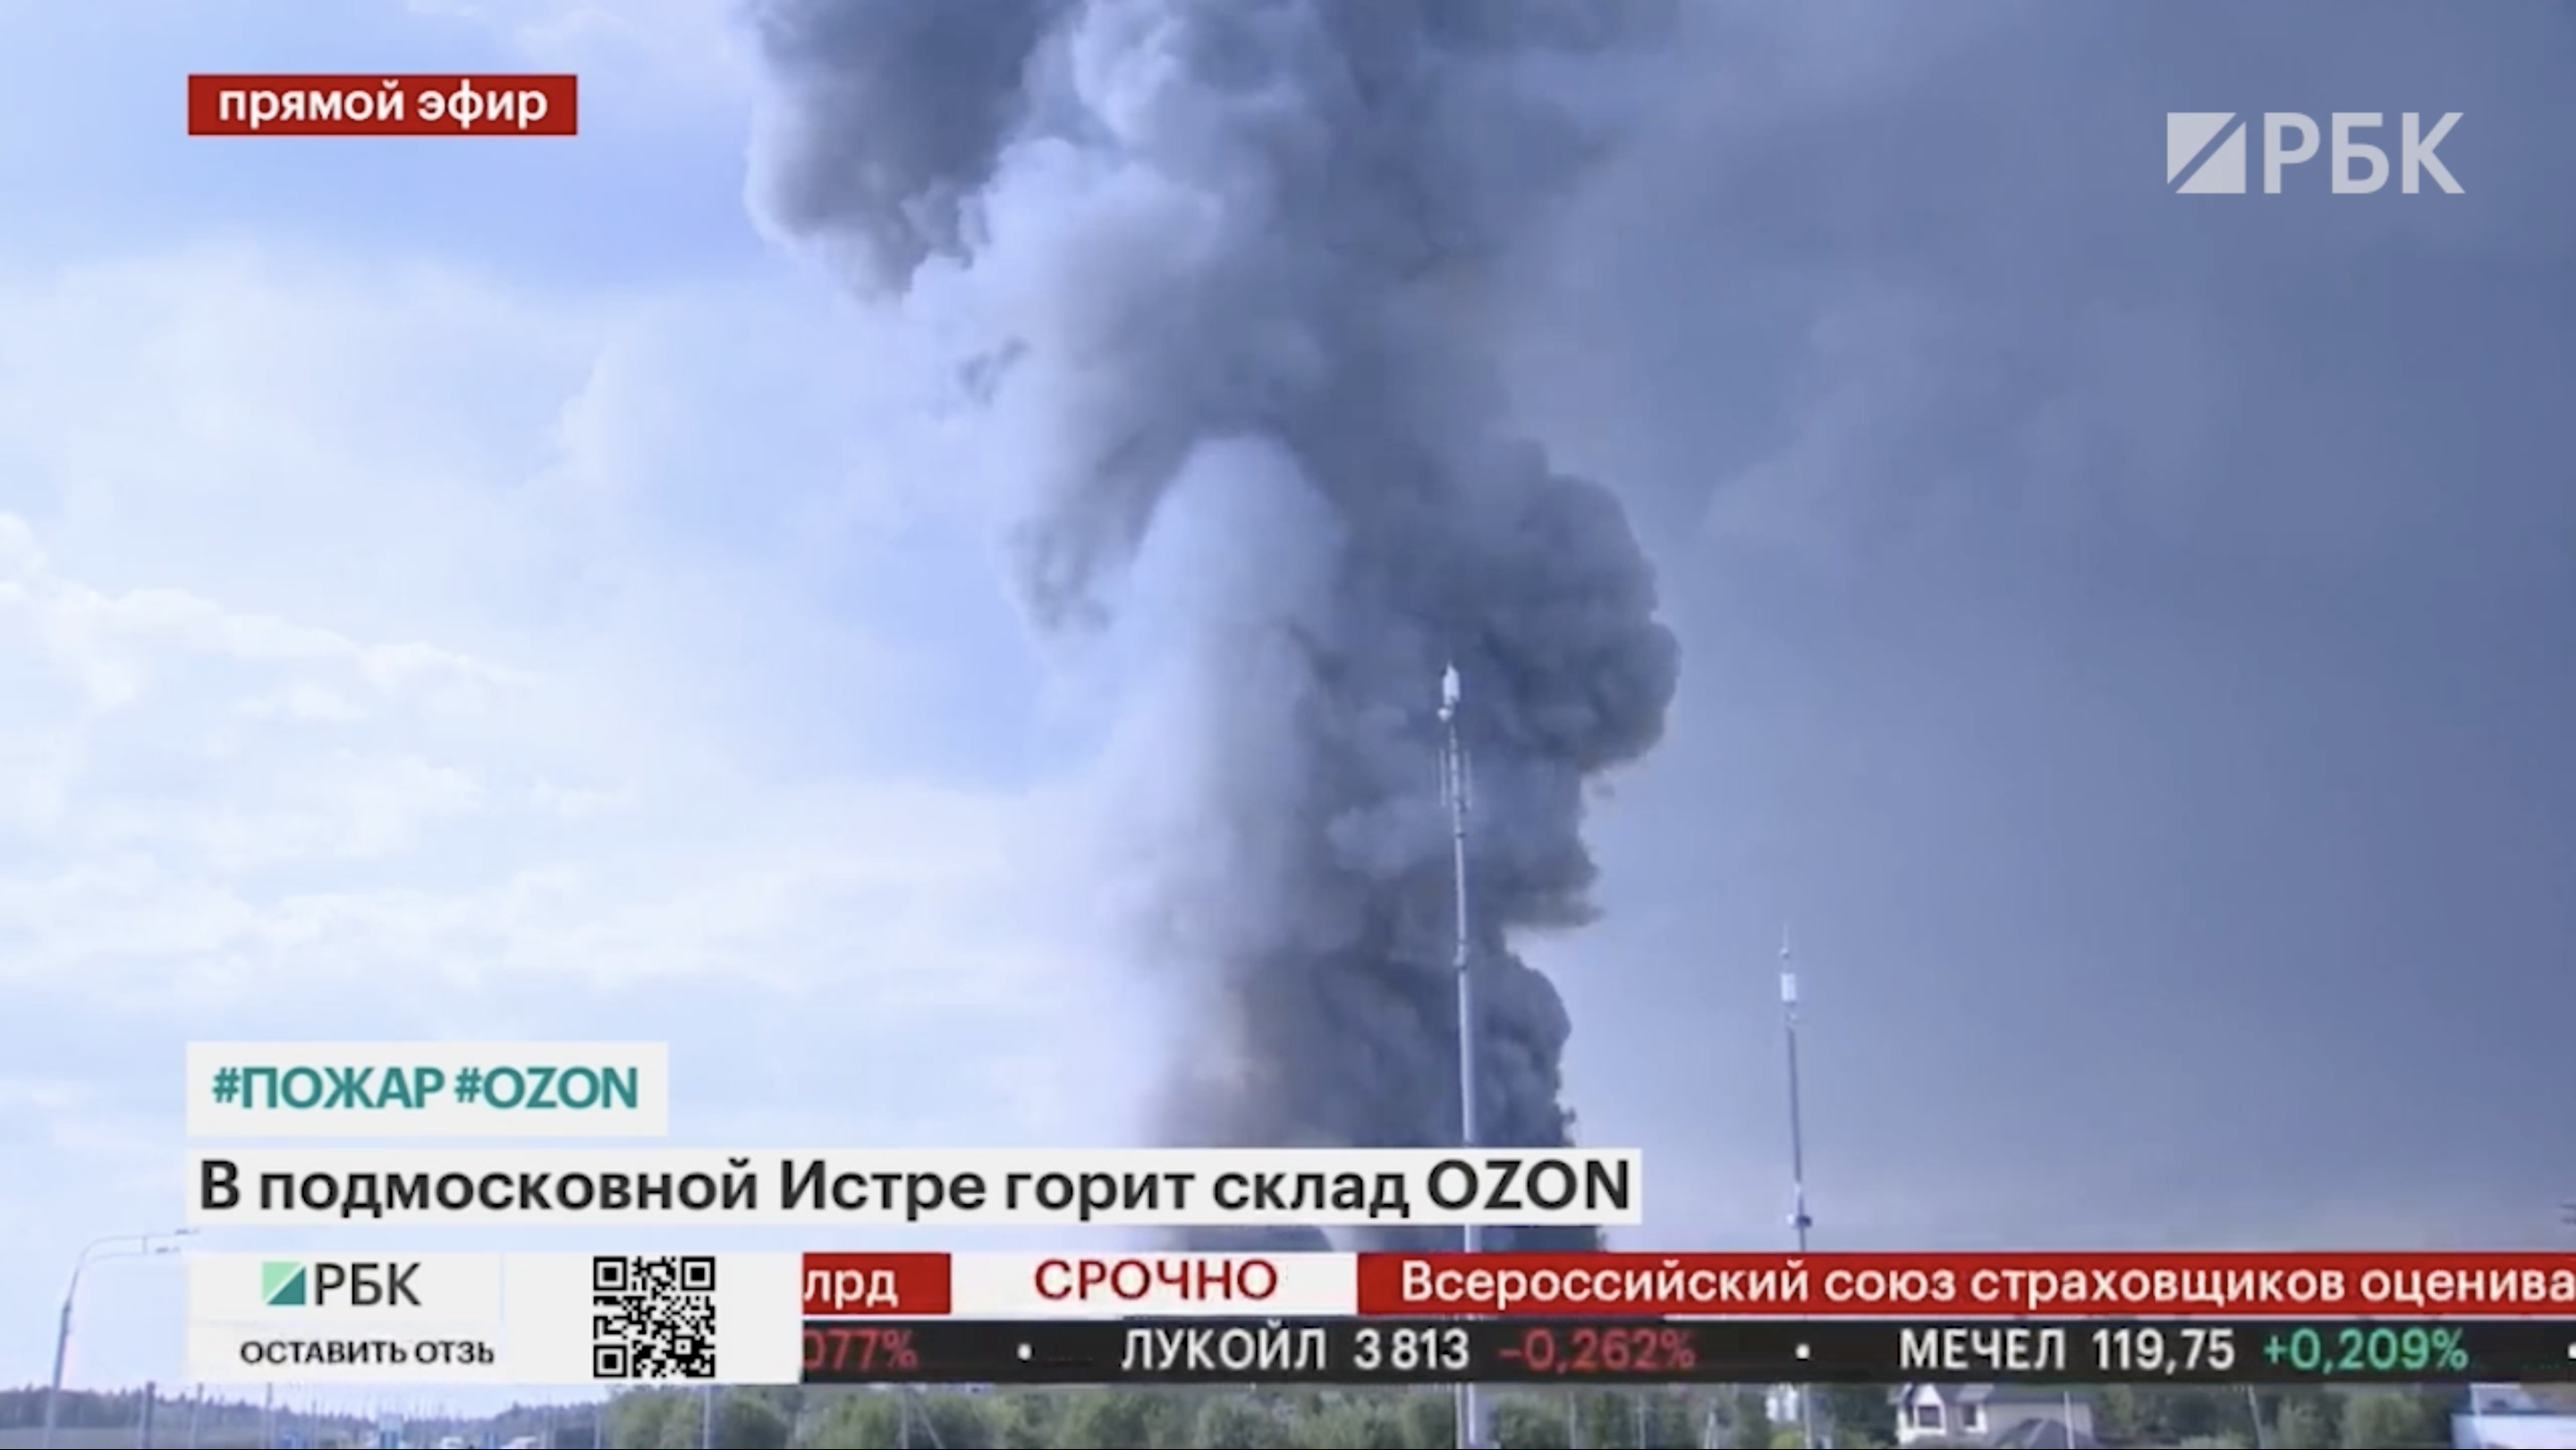 Площадь пожара на складе Ozon в Подмосковье увеличилась до 50 тыс. кв. м